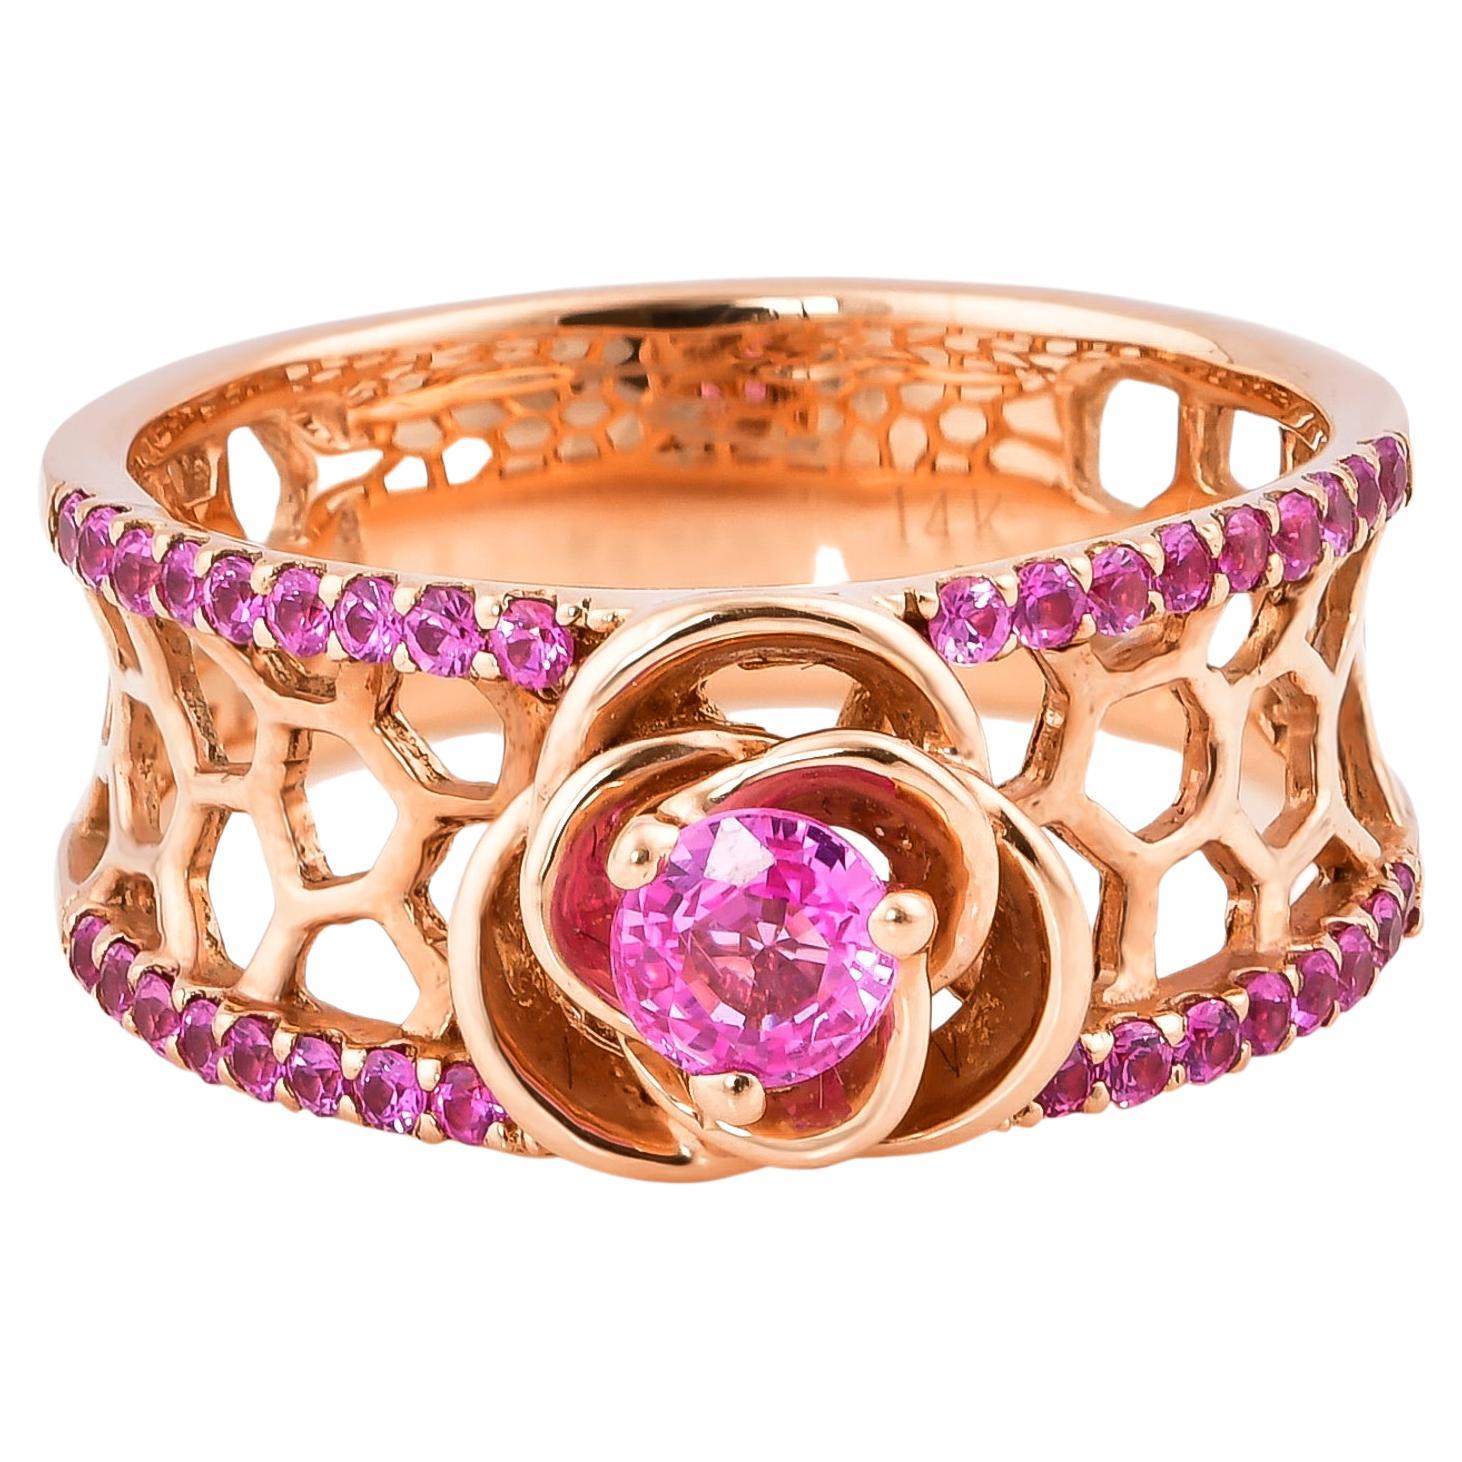 0.723 Carat Pink Sapphire Ring in 14 Karat Rose Gold